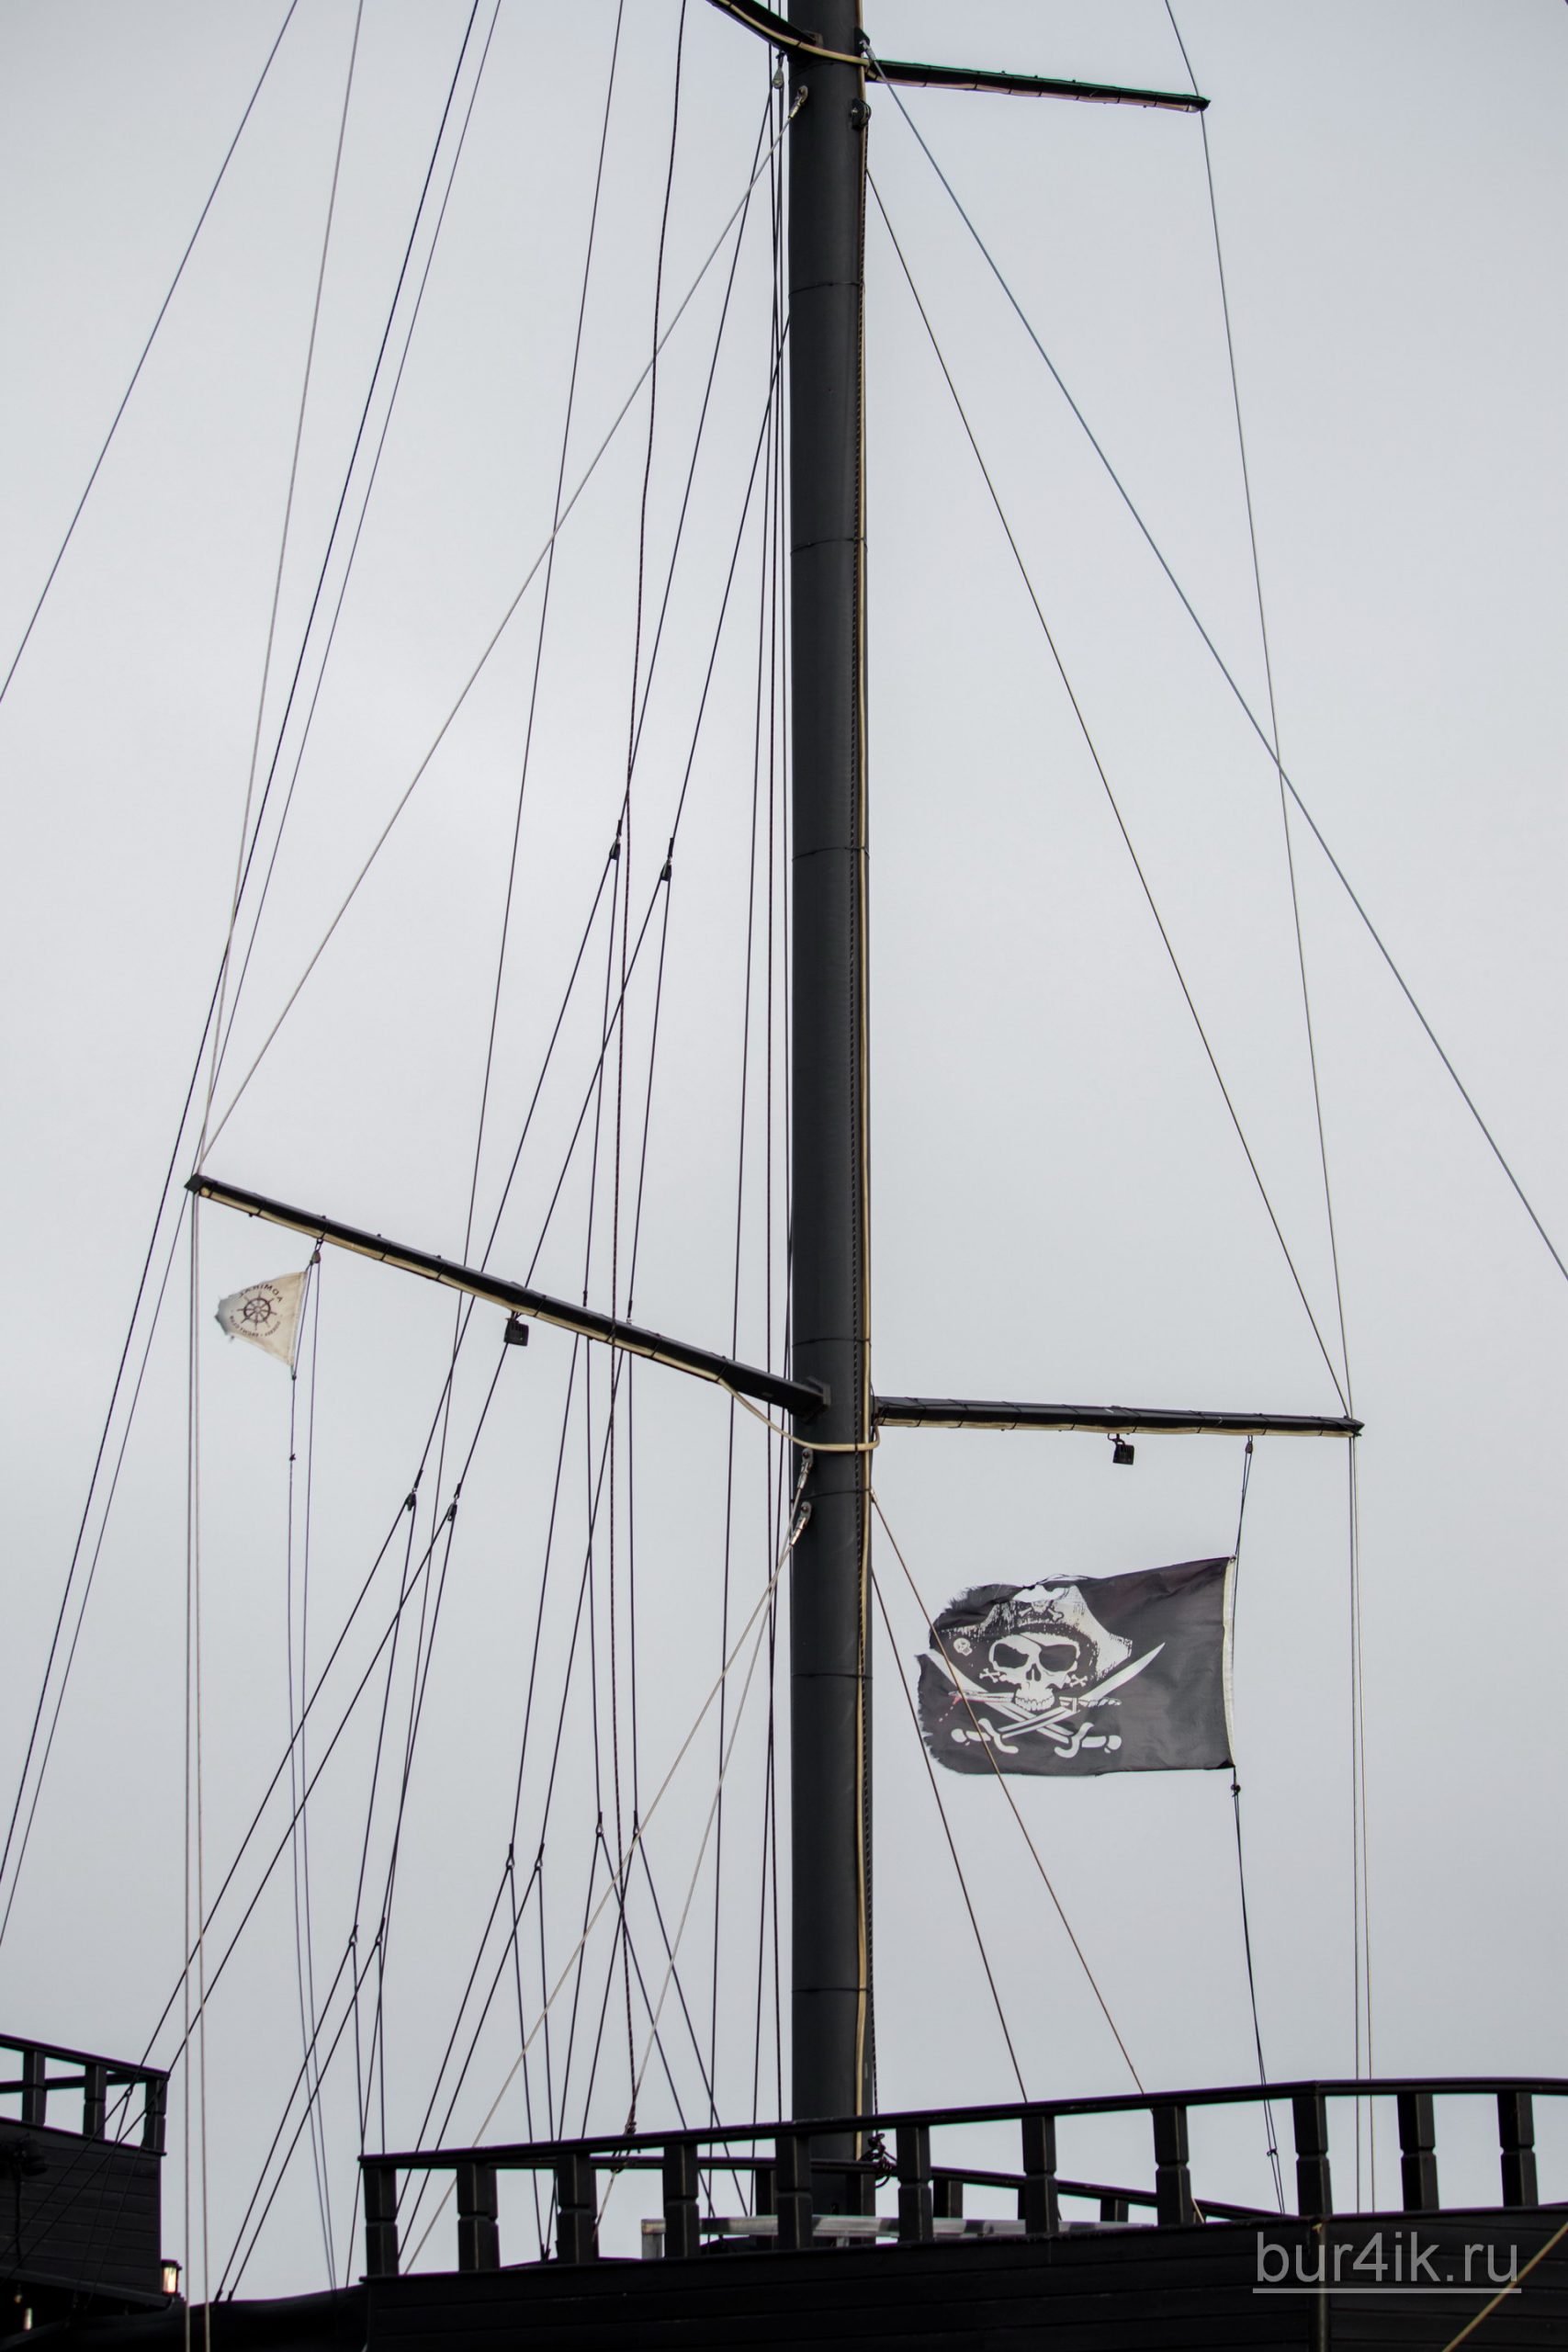 Черный пиратский флаг с черепом и саблями на мачте фрегата 12